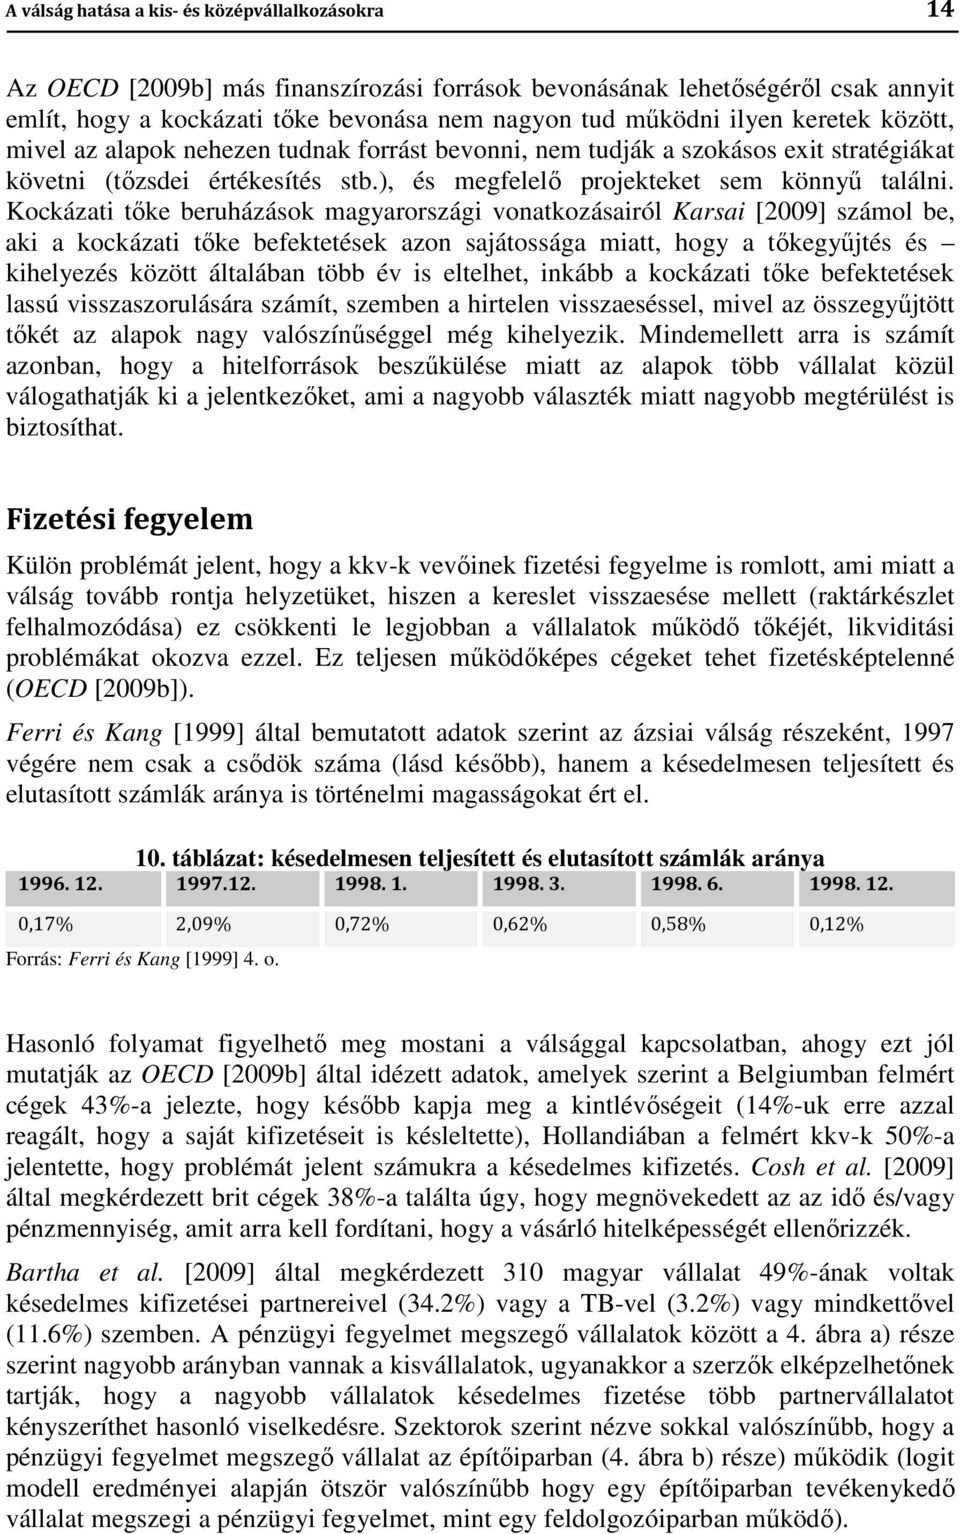 Kockázati tőke beruházások magyarországi vonatkozásairól Karsai [2009] számol be, aki a kockázati tőke befektetések azon sajátossága miatt, hogy a tőkegyűjtés és kihelyezés között általában több év